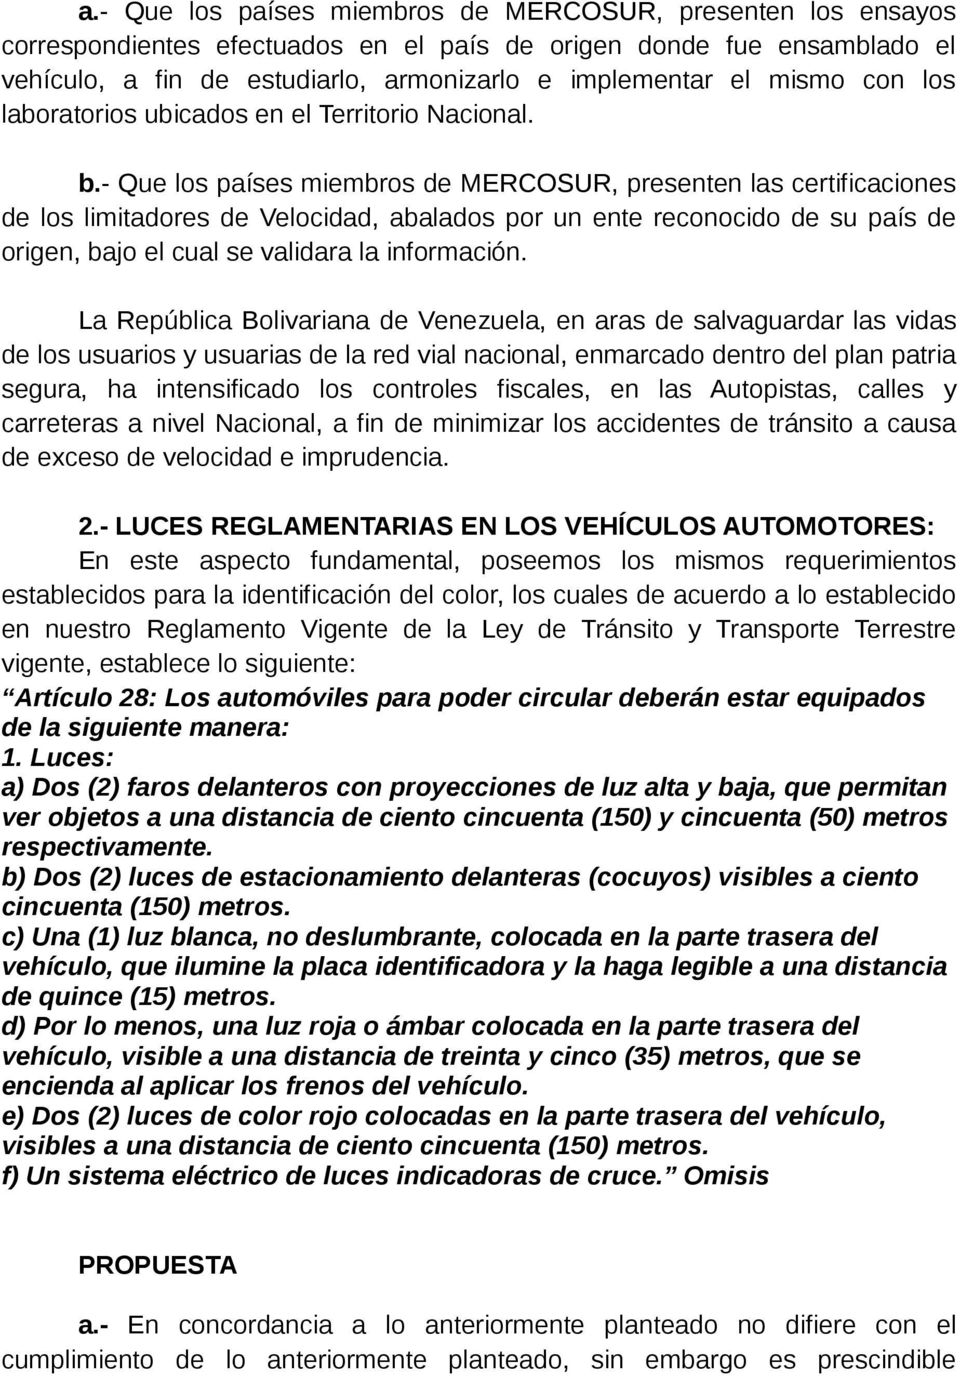 - Que los países miembros de MERCOSUR, presenten las certificaciones de los limitadores de Velocidad, abalados por un ente reconocido de su país de origen, bajo el cual se validara la información.